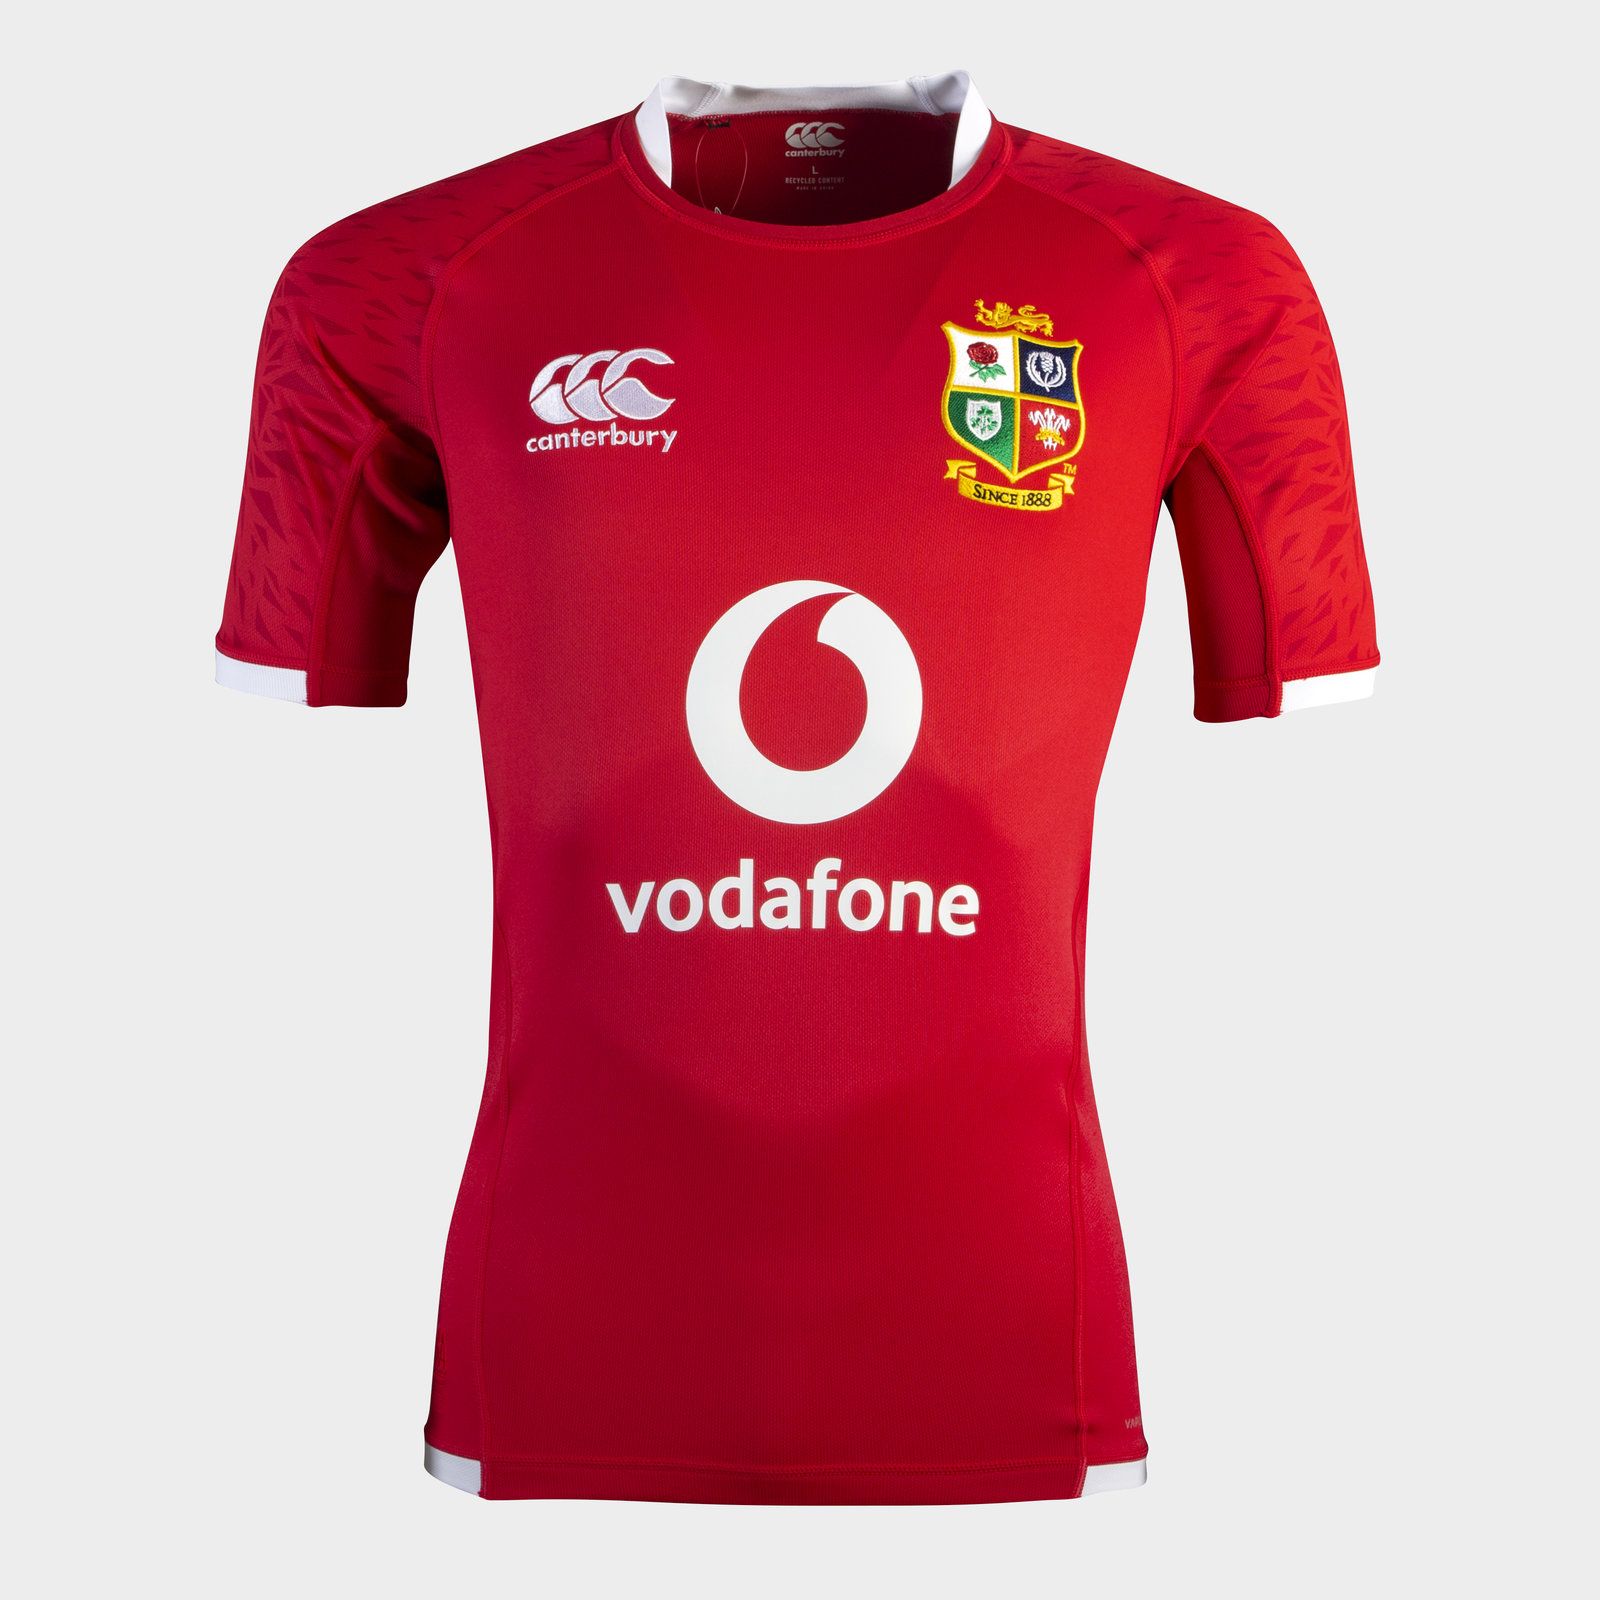 Canterbury British and Irish Lions Pro Rugby Shirt Tango Red TANGO RED, £23.00